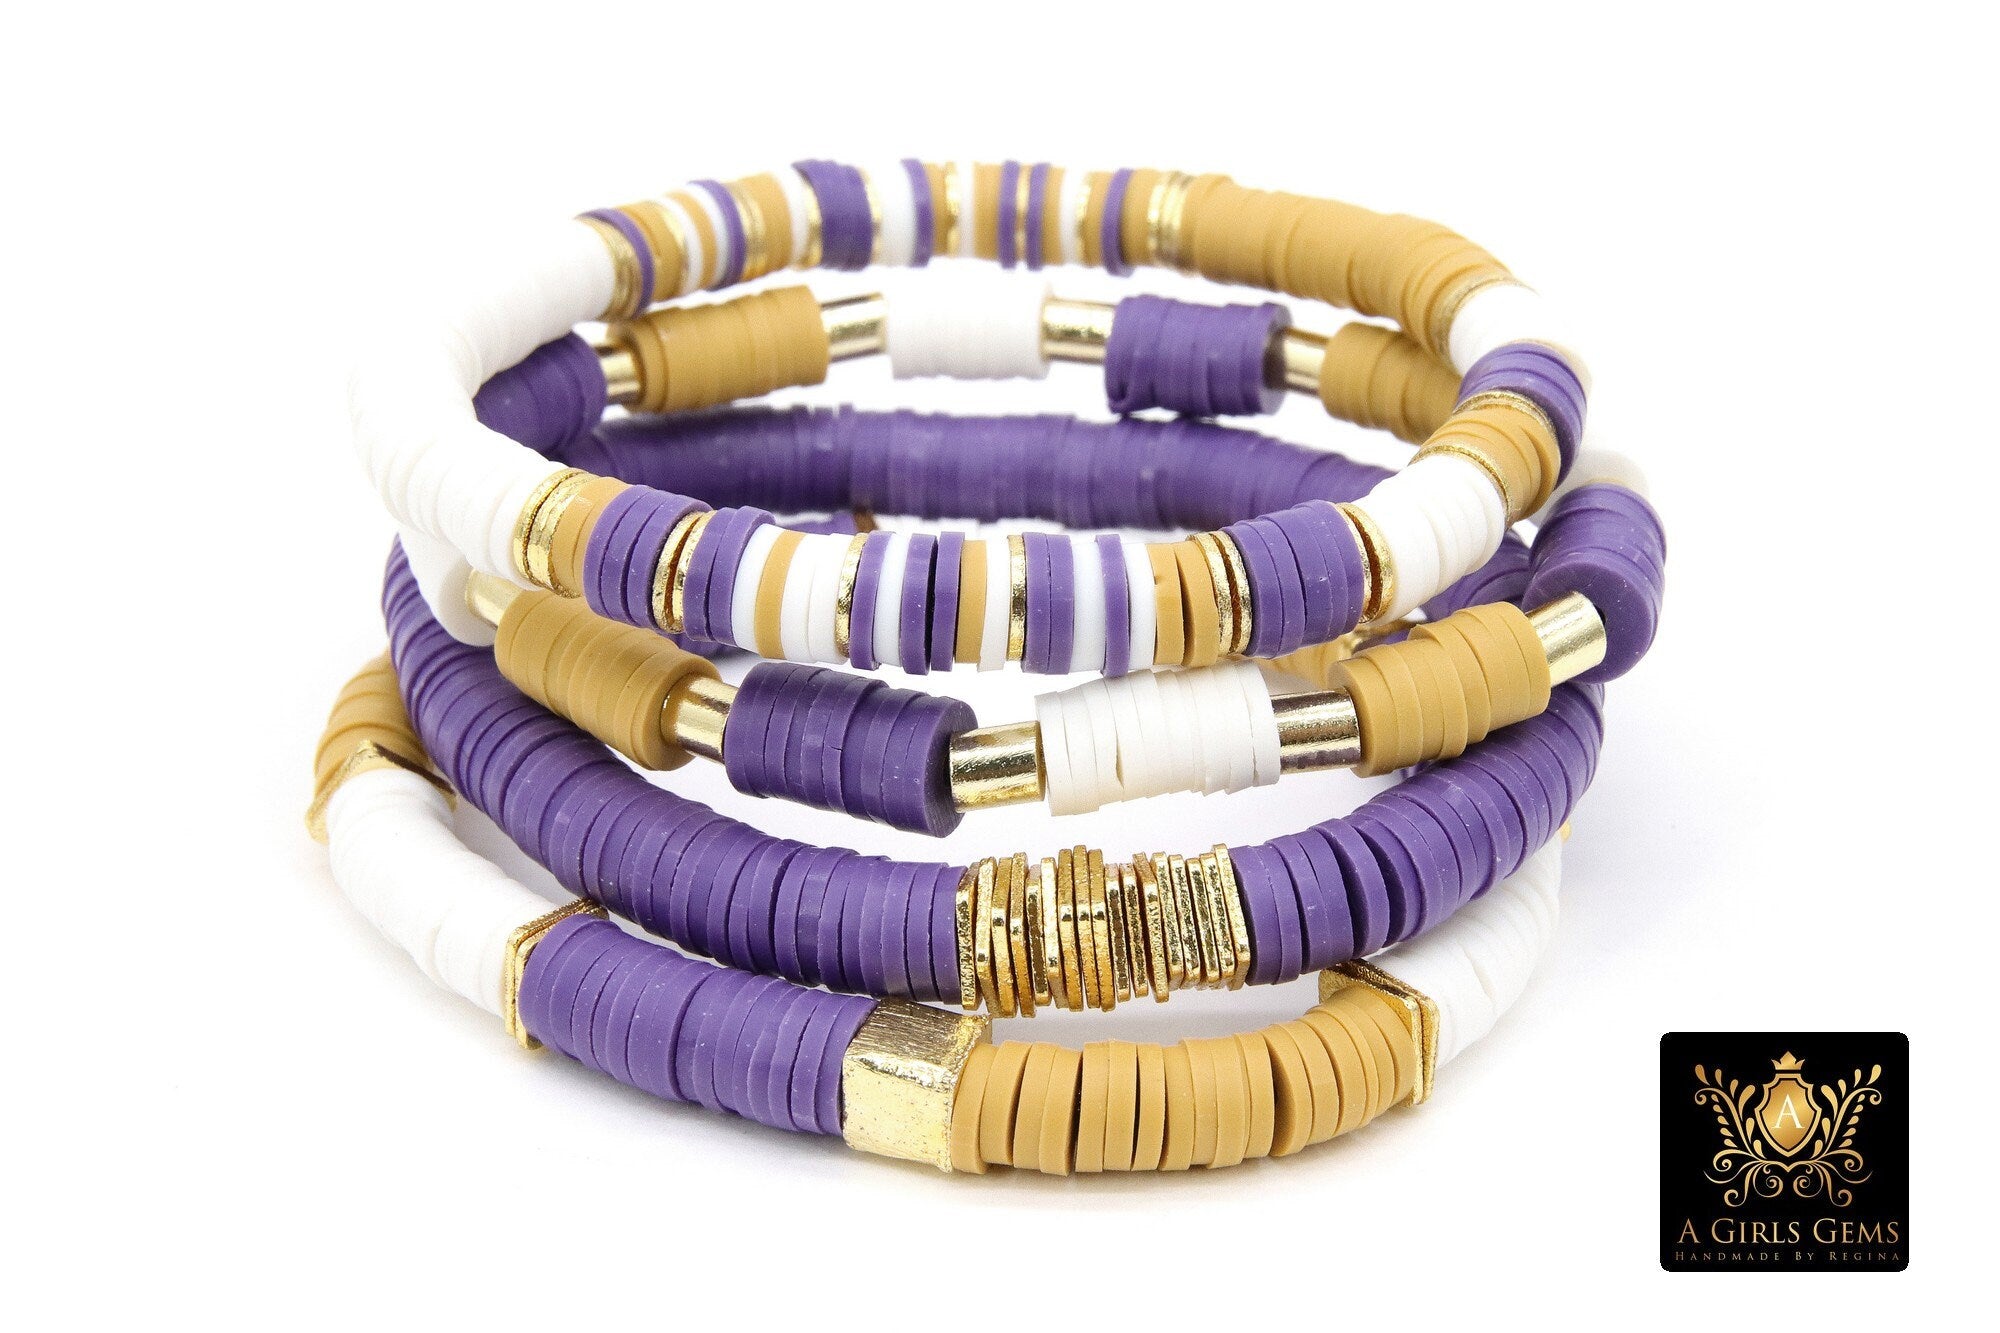 Custom Stretch Bracelet Popular Clay Heishi Beads Personalized